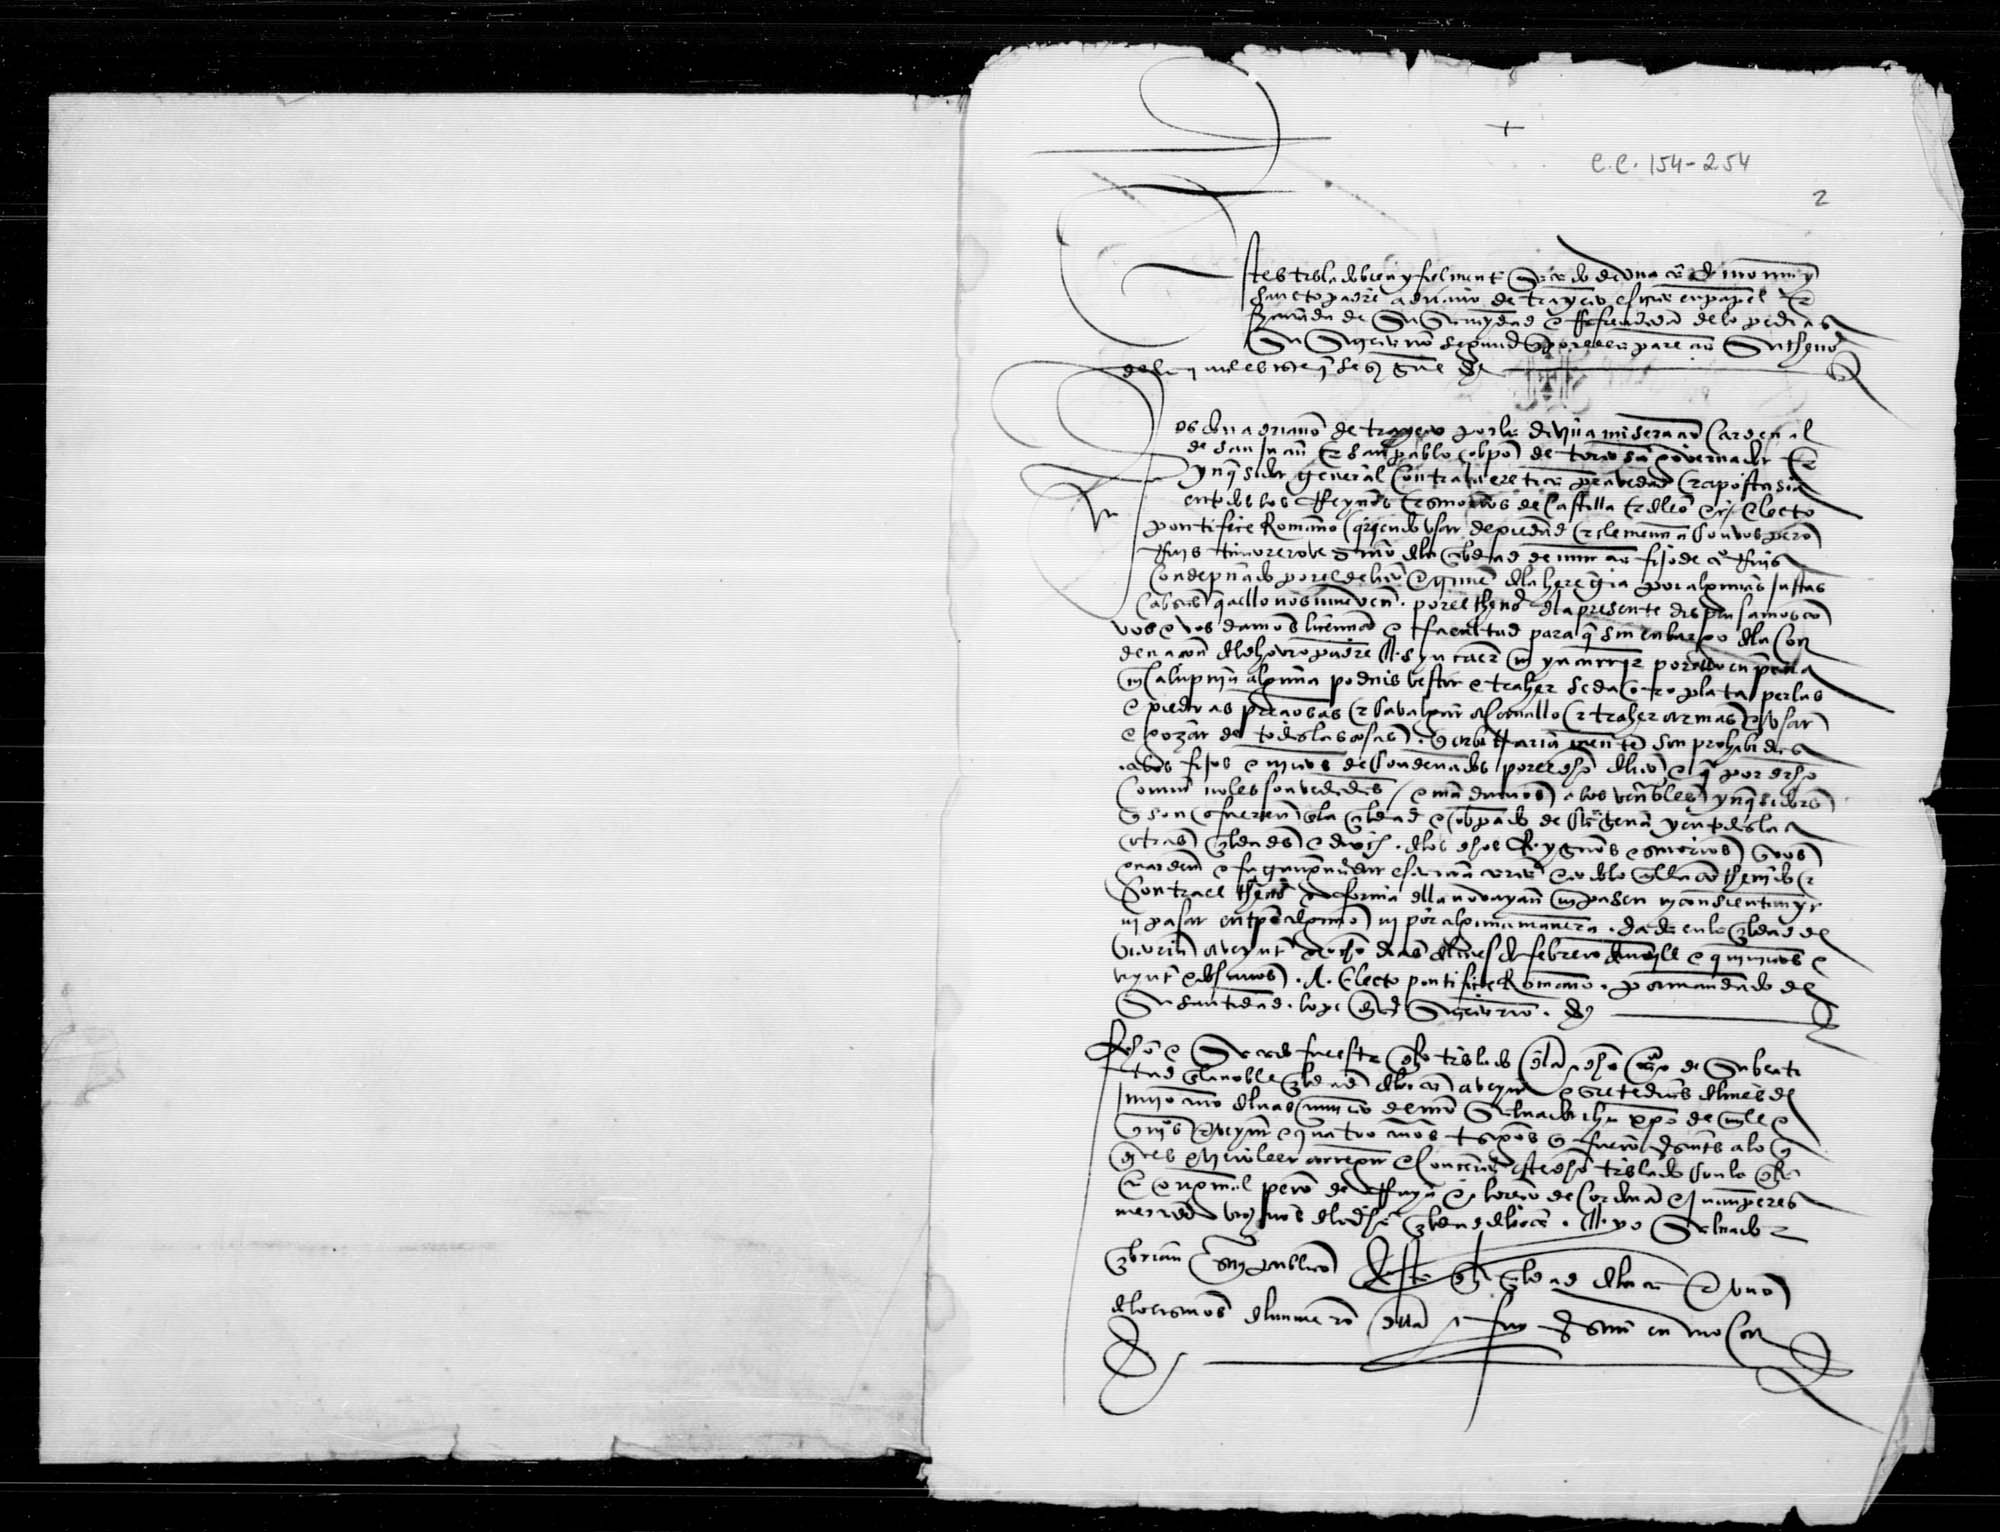 Documentación relativa a la habilitación de Pedro Ruiz, tintorero, vecino de Murcia, hijo de un condenado por el Santo Oficio.